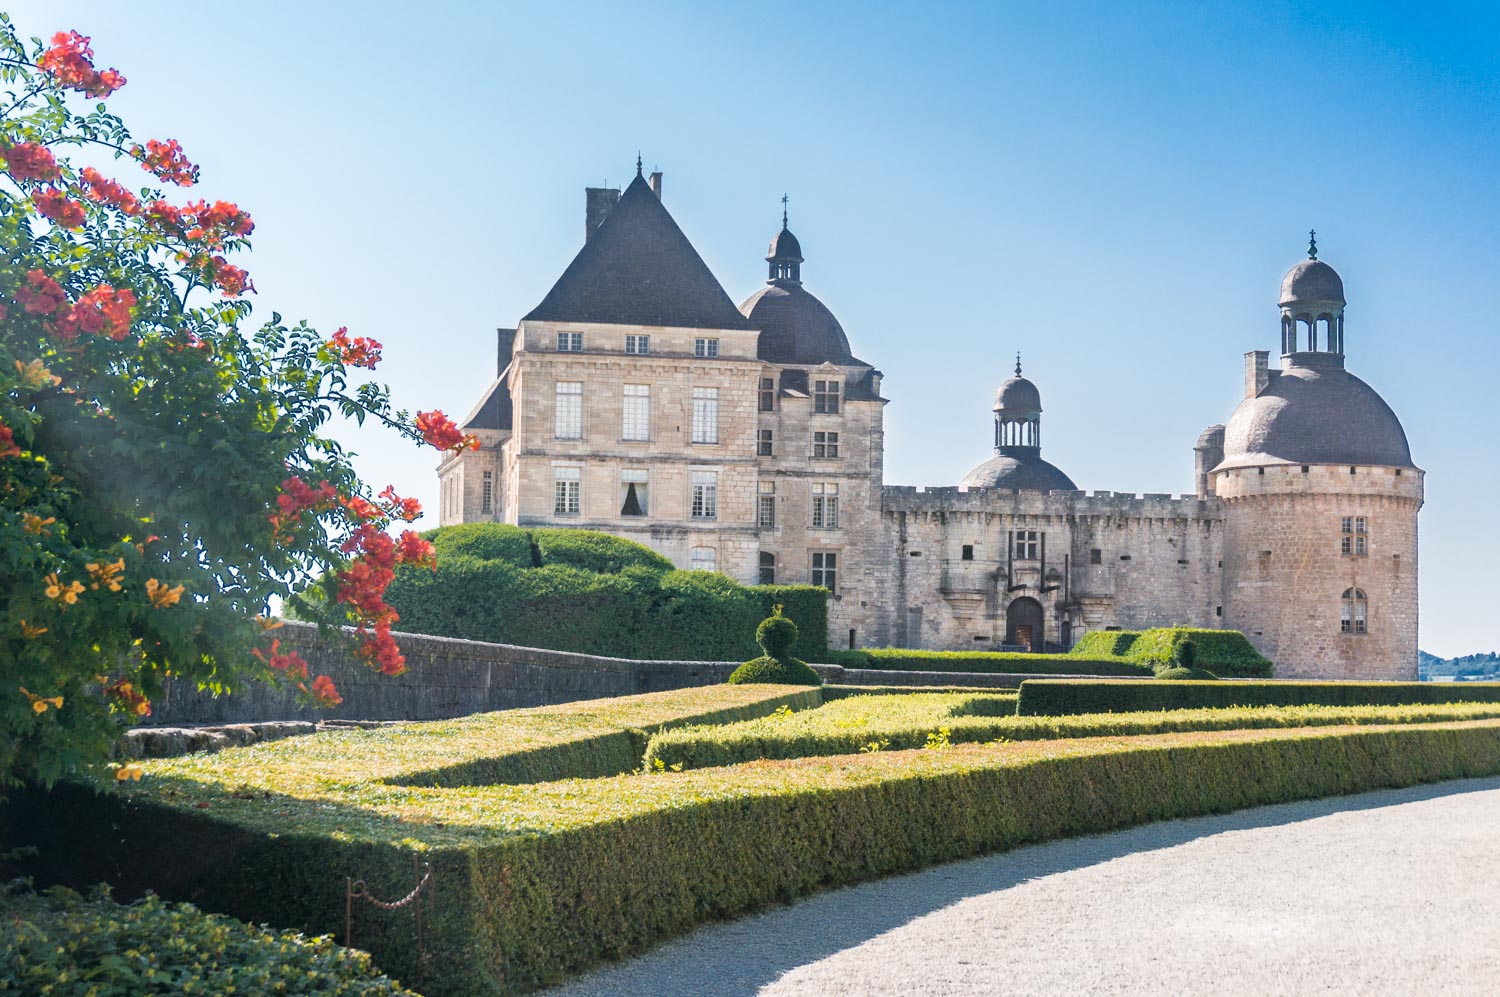 A month in France – Château de Hautefort